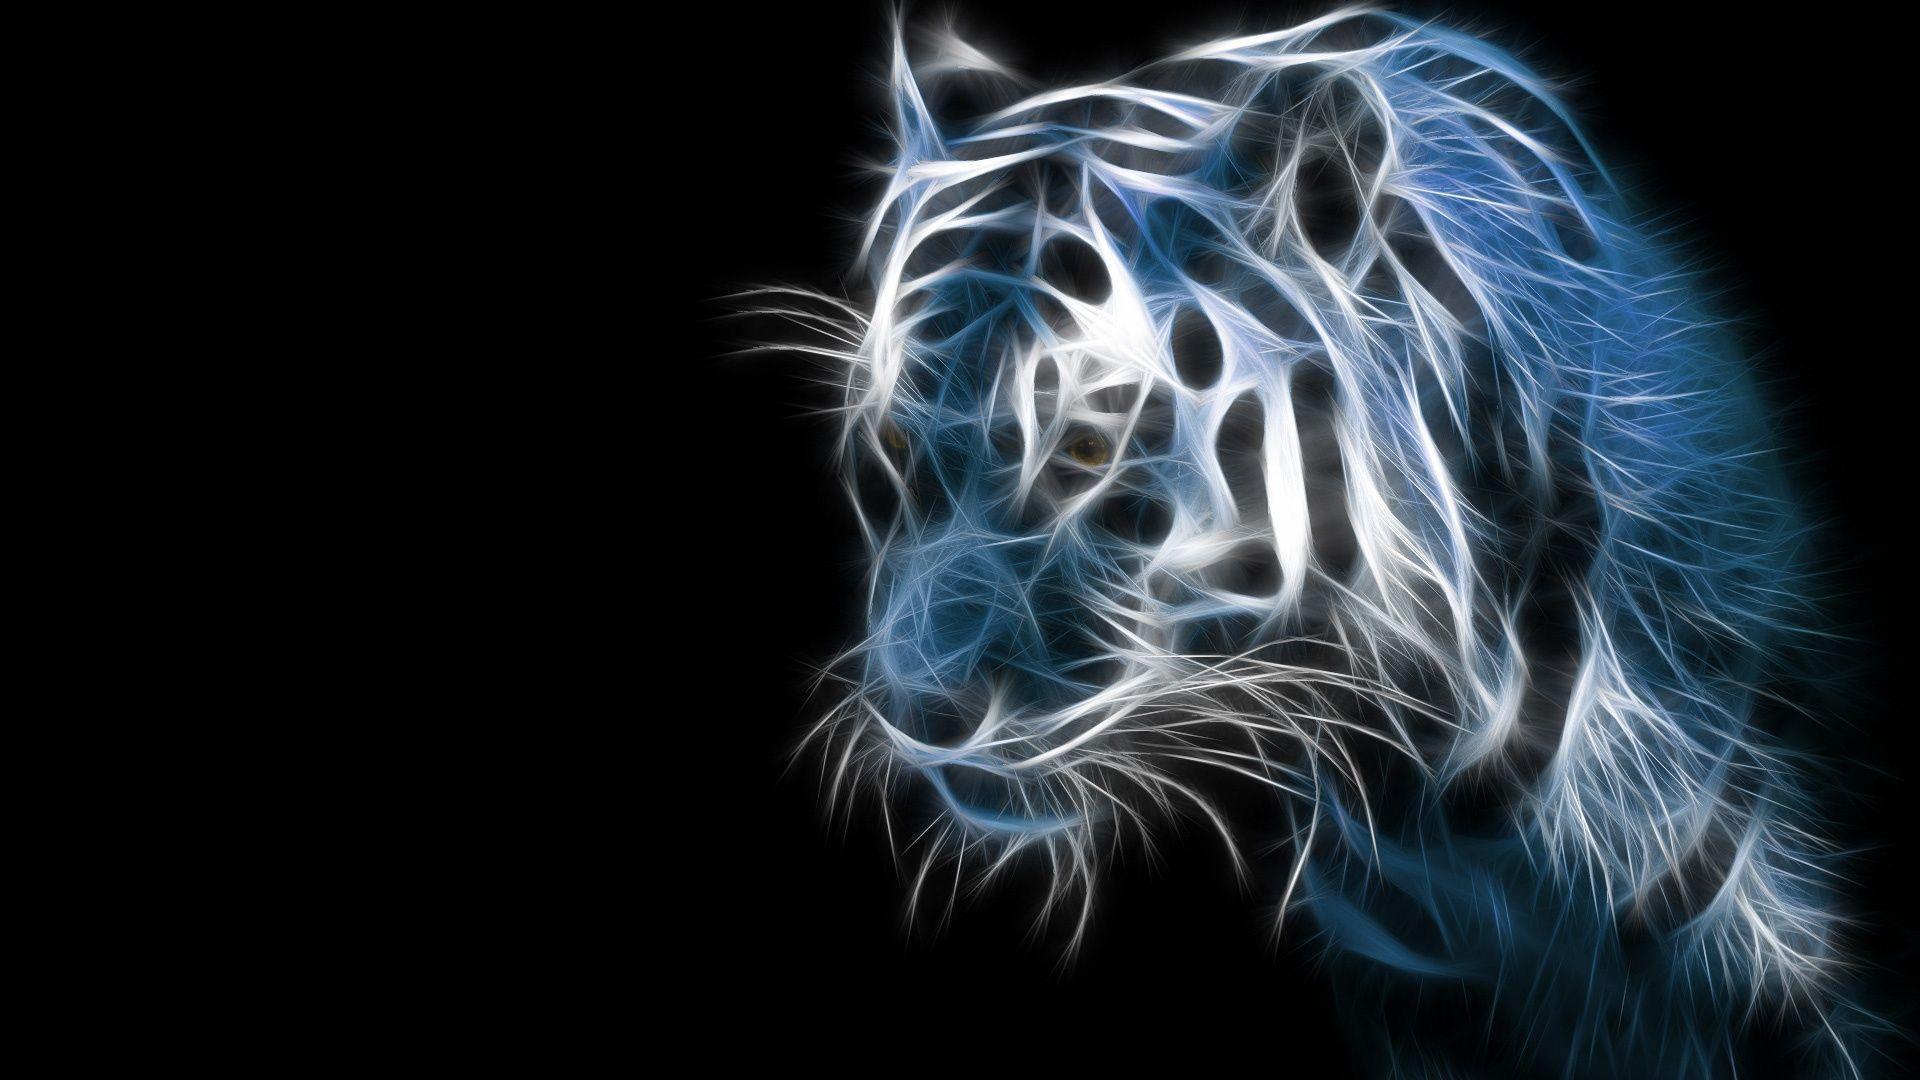 Tiger desktop wallpaper background HD dimensions background